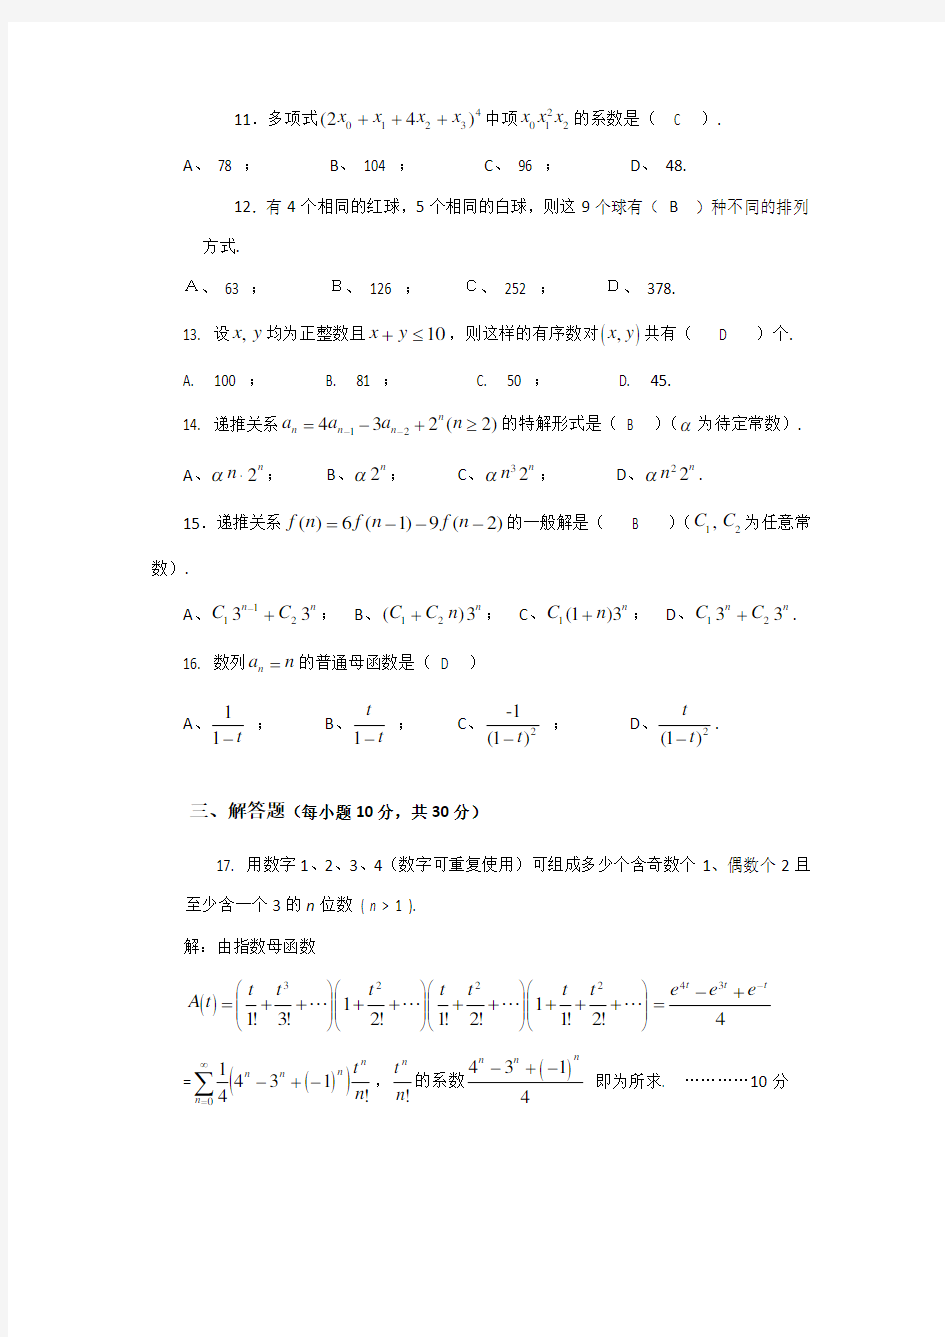 组合数学试卷A(2014-2015-1)答卷